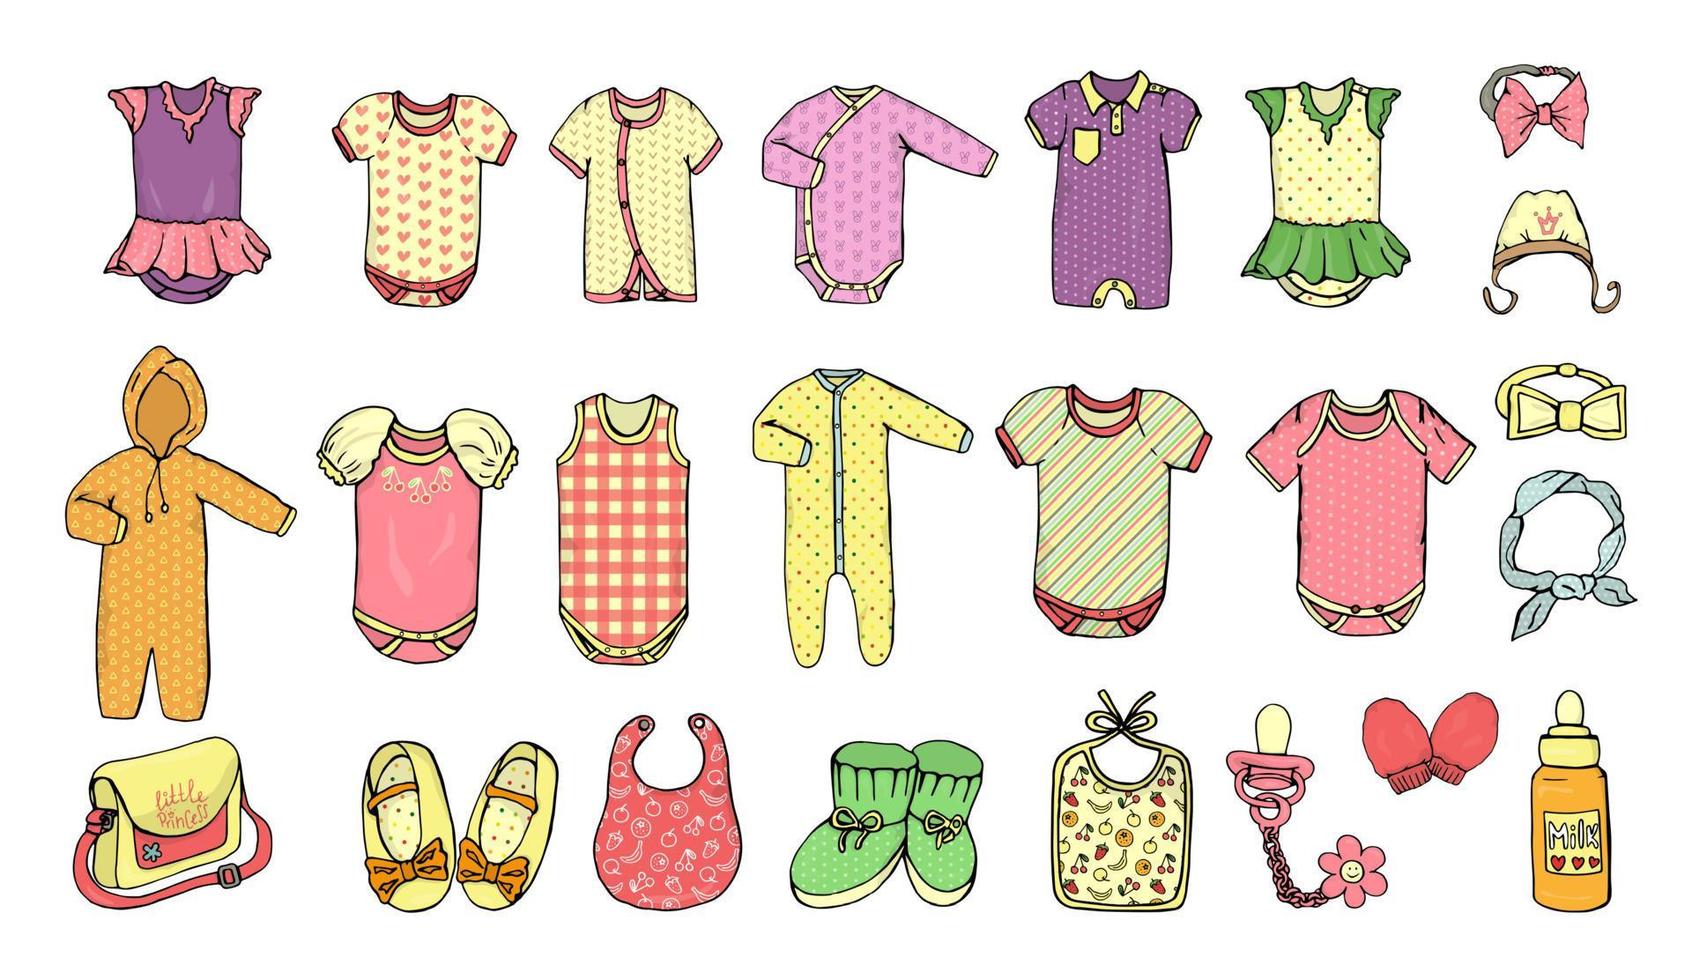 illustrazione vettoriale di vestiti per bambini. set di vestiti per bambina. set di moda per bambini. vestiti alla moda e accessori per bambini isolati su sfondo bianco